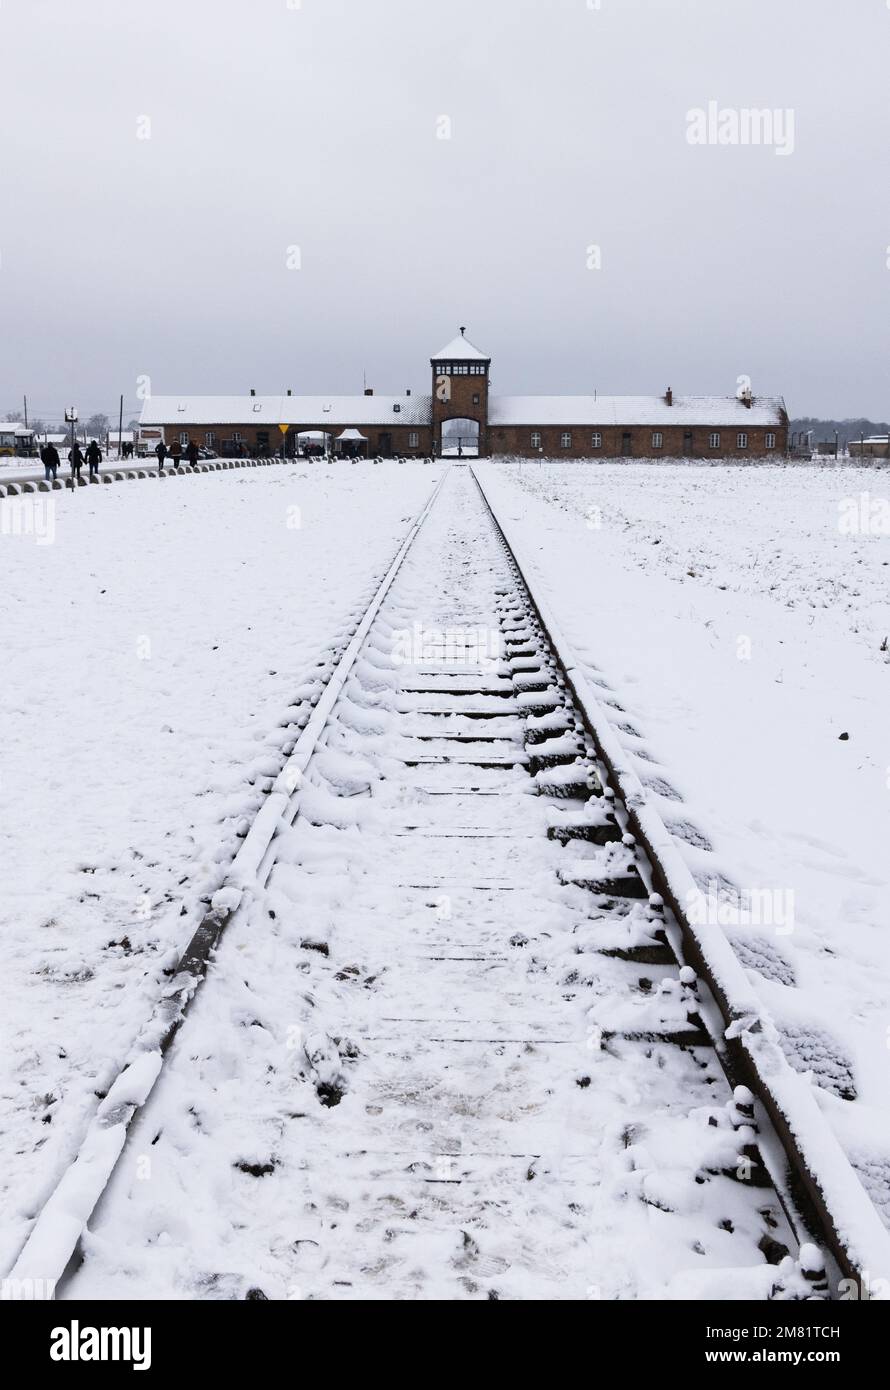 Auschwitz-Birkenau-Konzentrationslager; düsteres Eingangstor und Eisenbahnlinie im Winterschnee; Auschwitz, Oswiecim Polen; Todeslager der Nazis im Zweiten Weltkrieg. Stockfoto